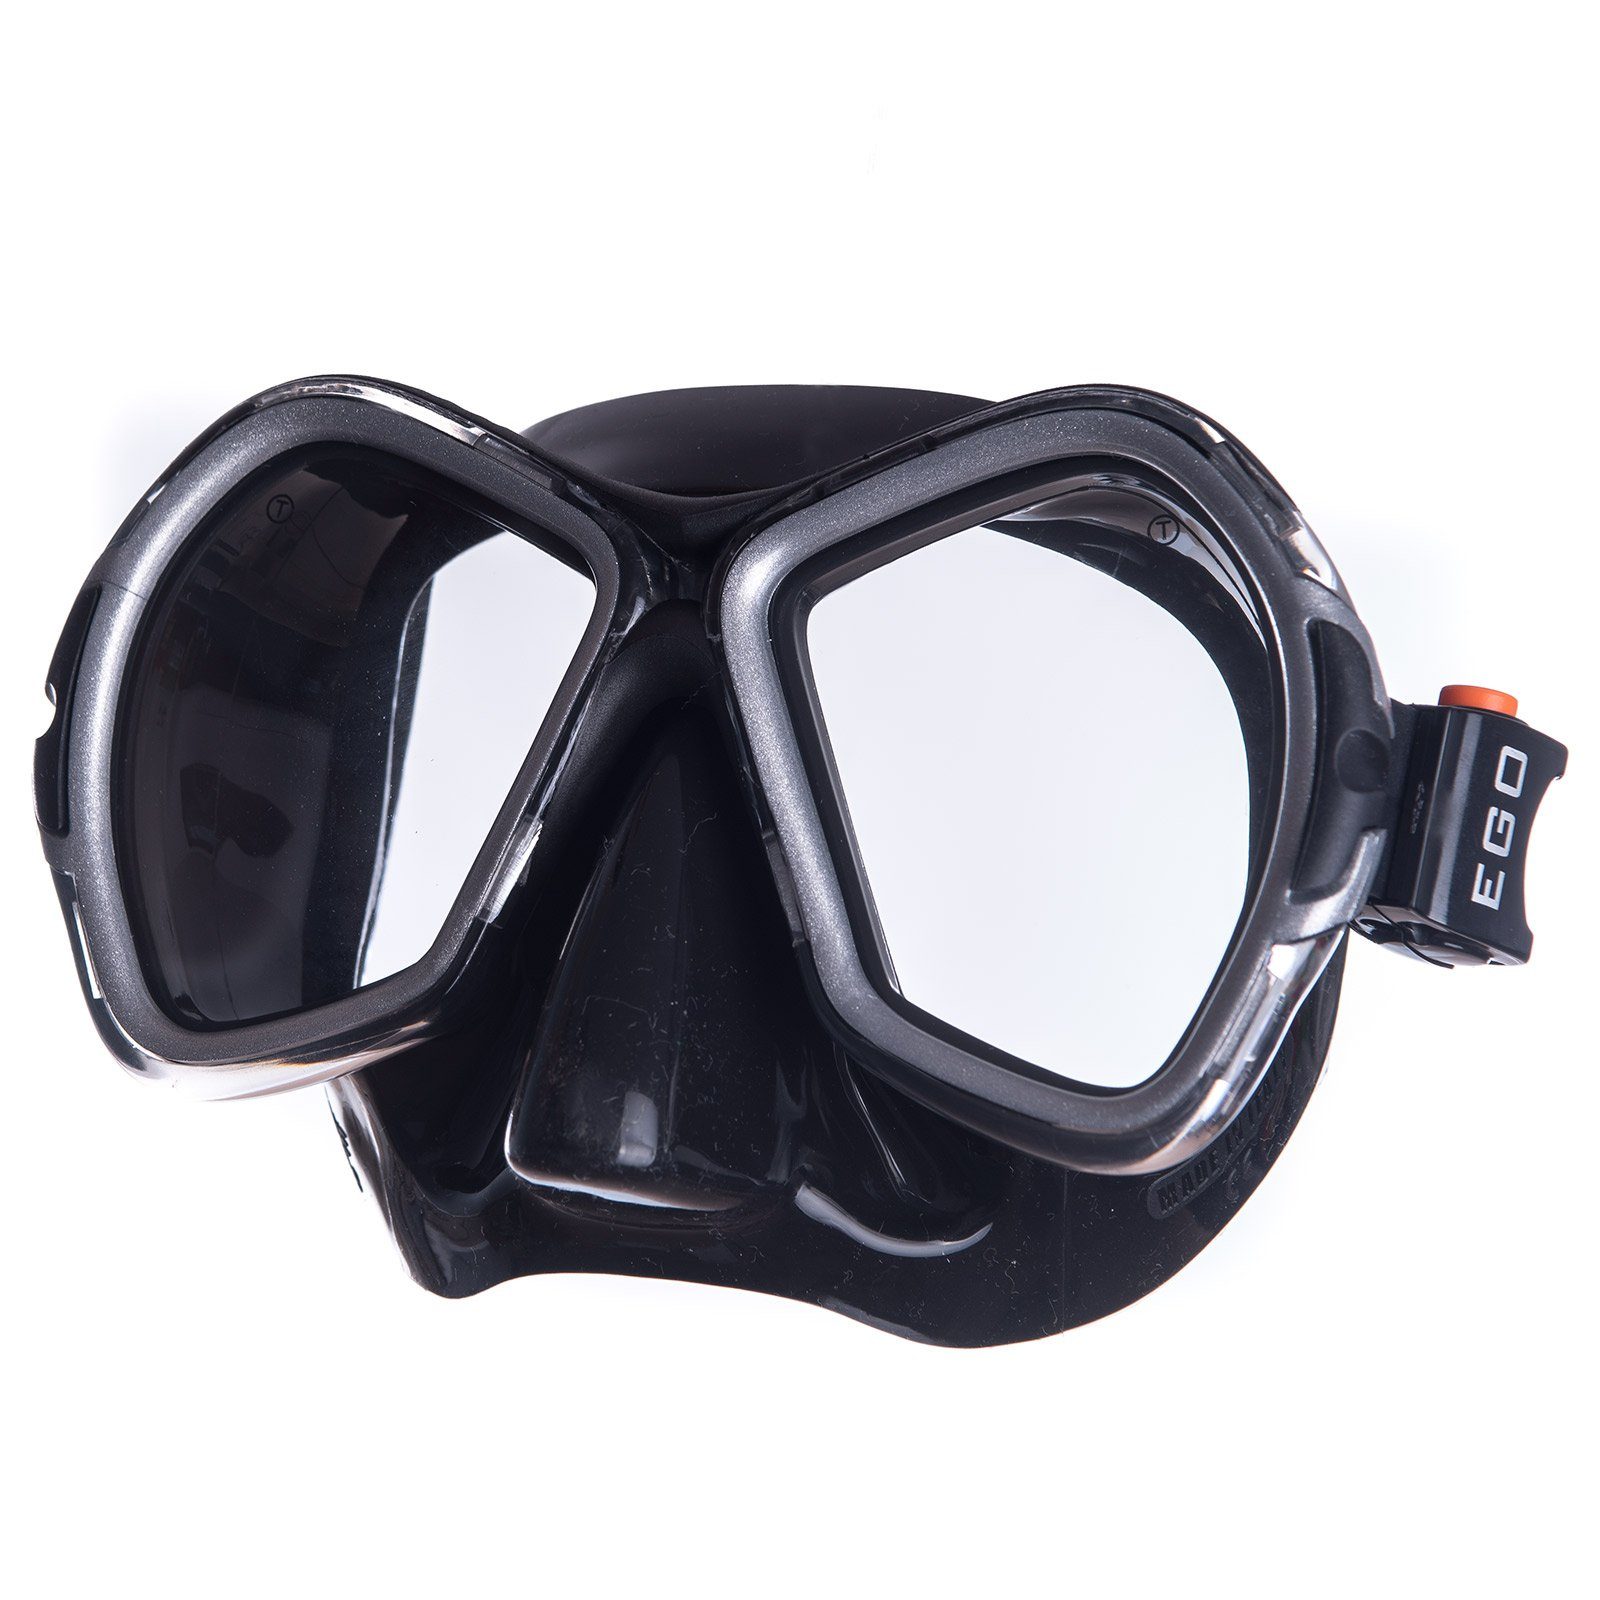 Neuzugänge diese Woche Salvas Schwimmbrille Tauch schwarz Silikon Maske Beschlag Schwimm Phoenix Brille Erwachsene Schnorchel